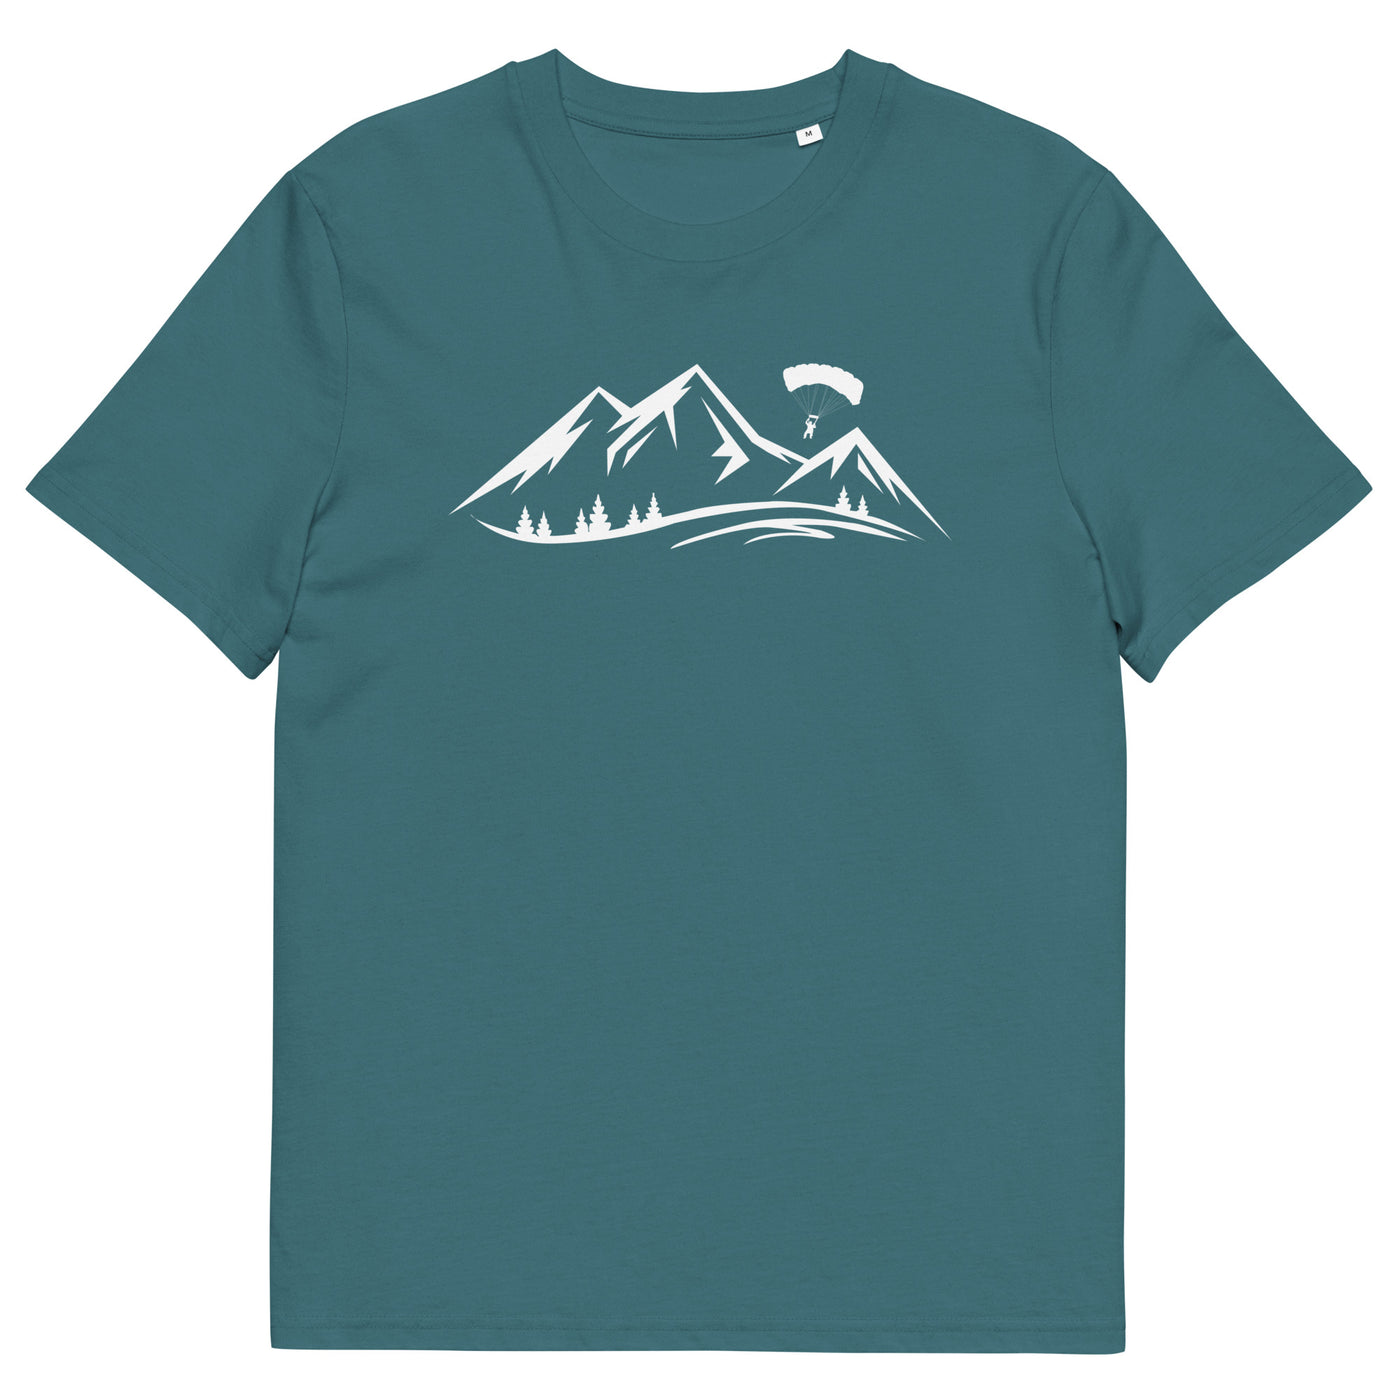 Berge und Paragleiten - Herren Premium Organic T-Shirt berge xxx yyy zzz Stargazer